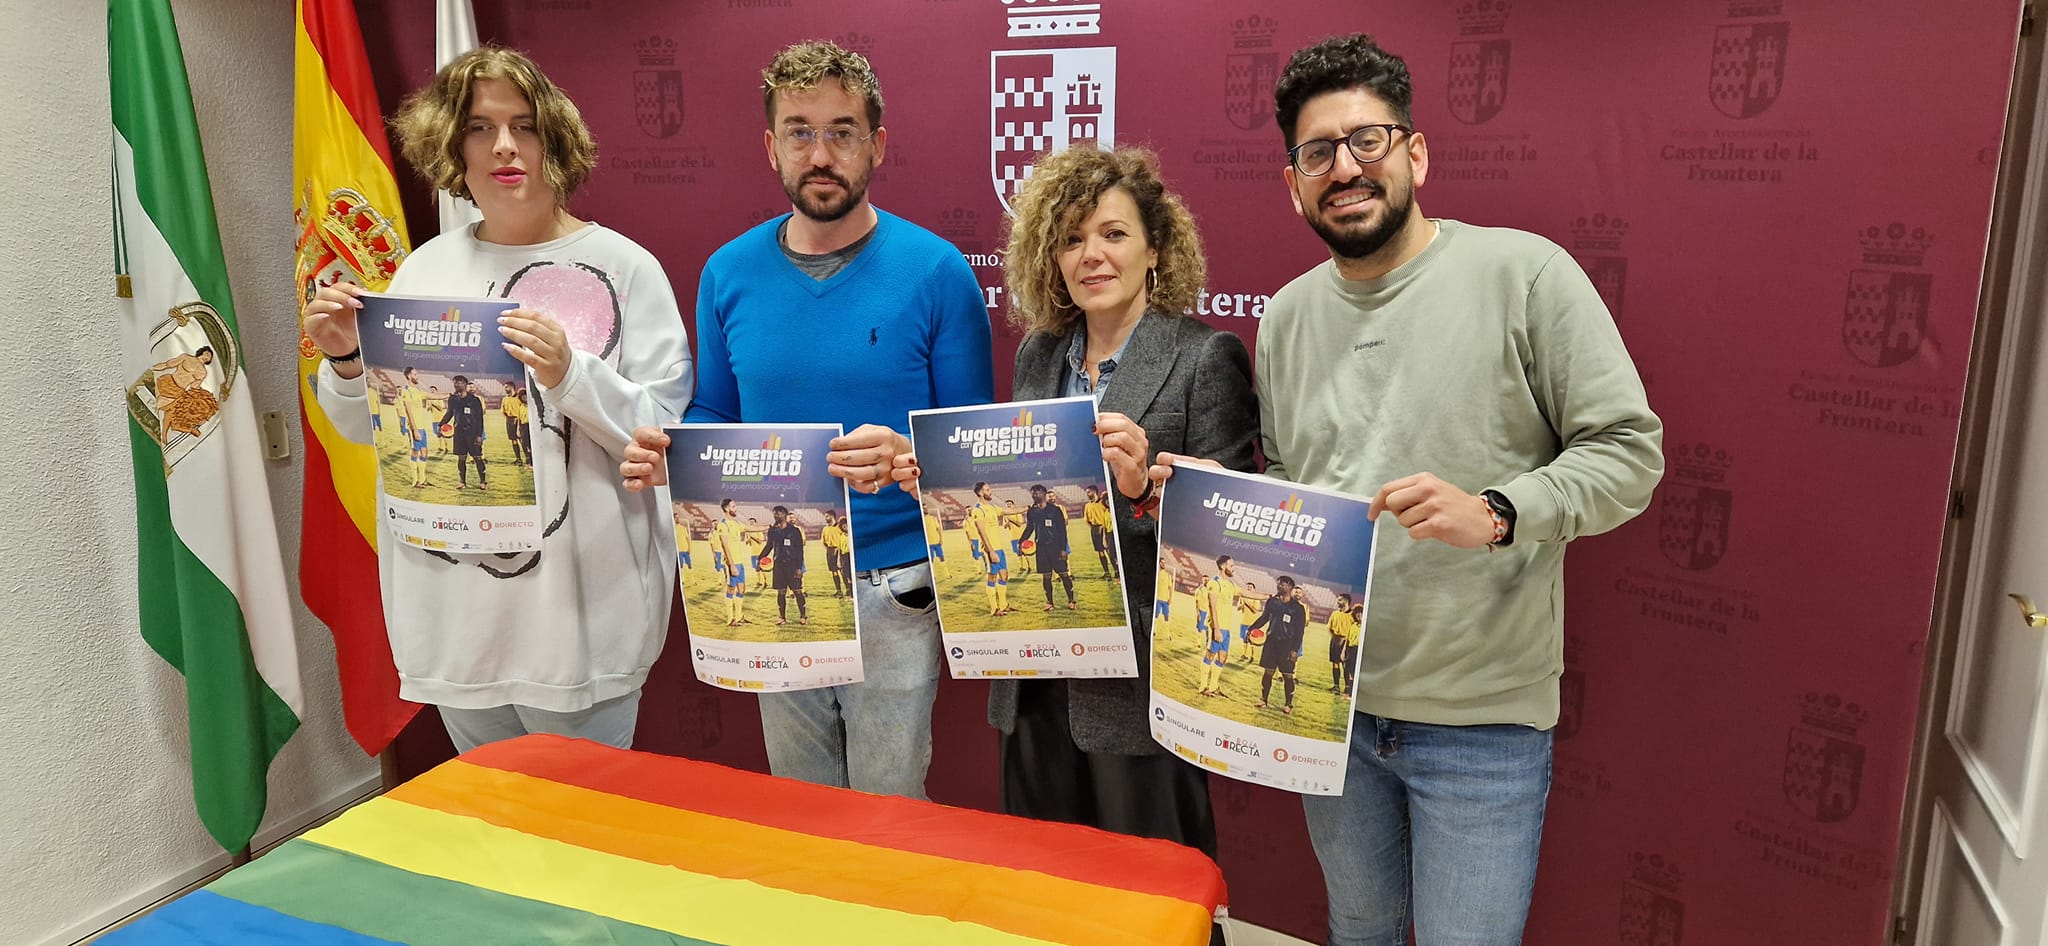 El Ayuntamiento de Castellar, Roja Directa Andalucía LGTBI y Arcoiris Lgtbi Castellar de la Frontera presentan la campaña de Igualdad en el Deporte de Equipos con motivo del Día Internacional contra la LGTBIfobia en el deporte